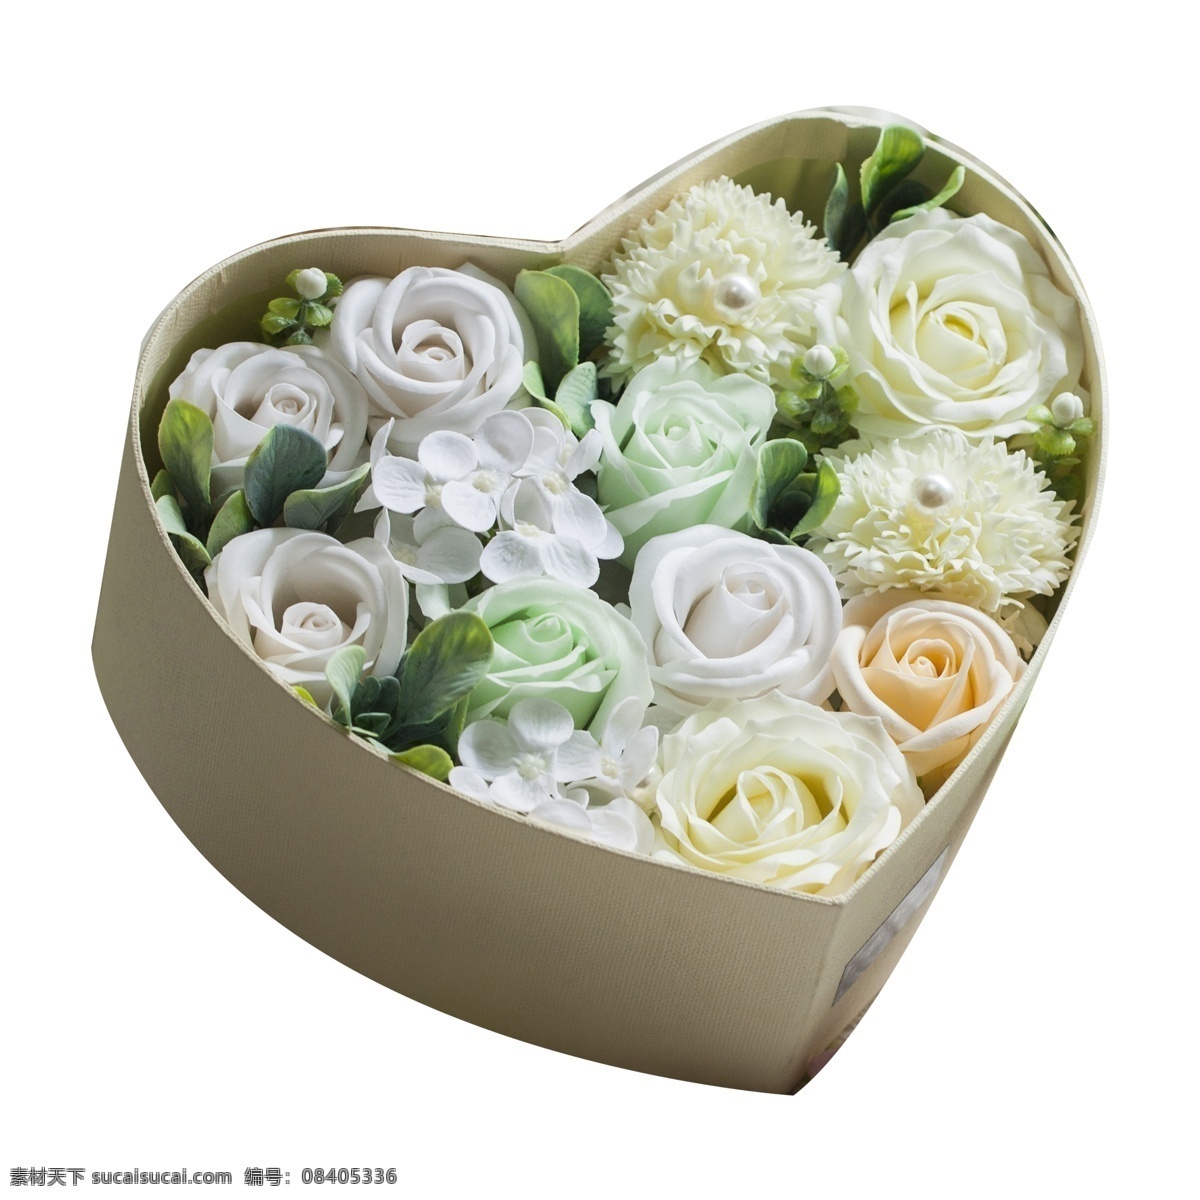 黄色 花朵 免 抠 图 爱心礼盒 白色的花朵 植物花朵 新鲜的花朵 花儿 礼物包装 黄色的花朵 免抠图